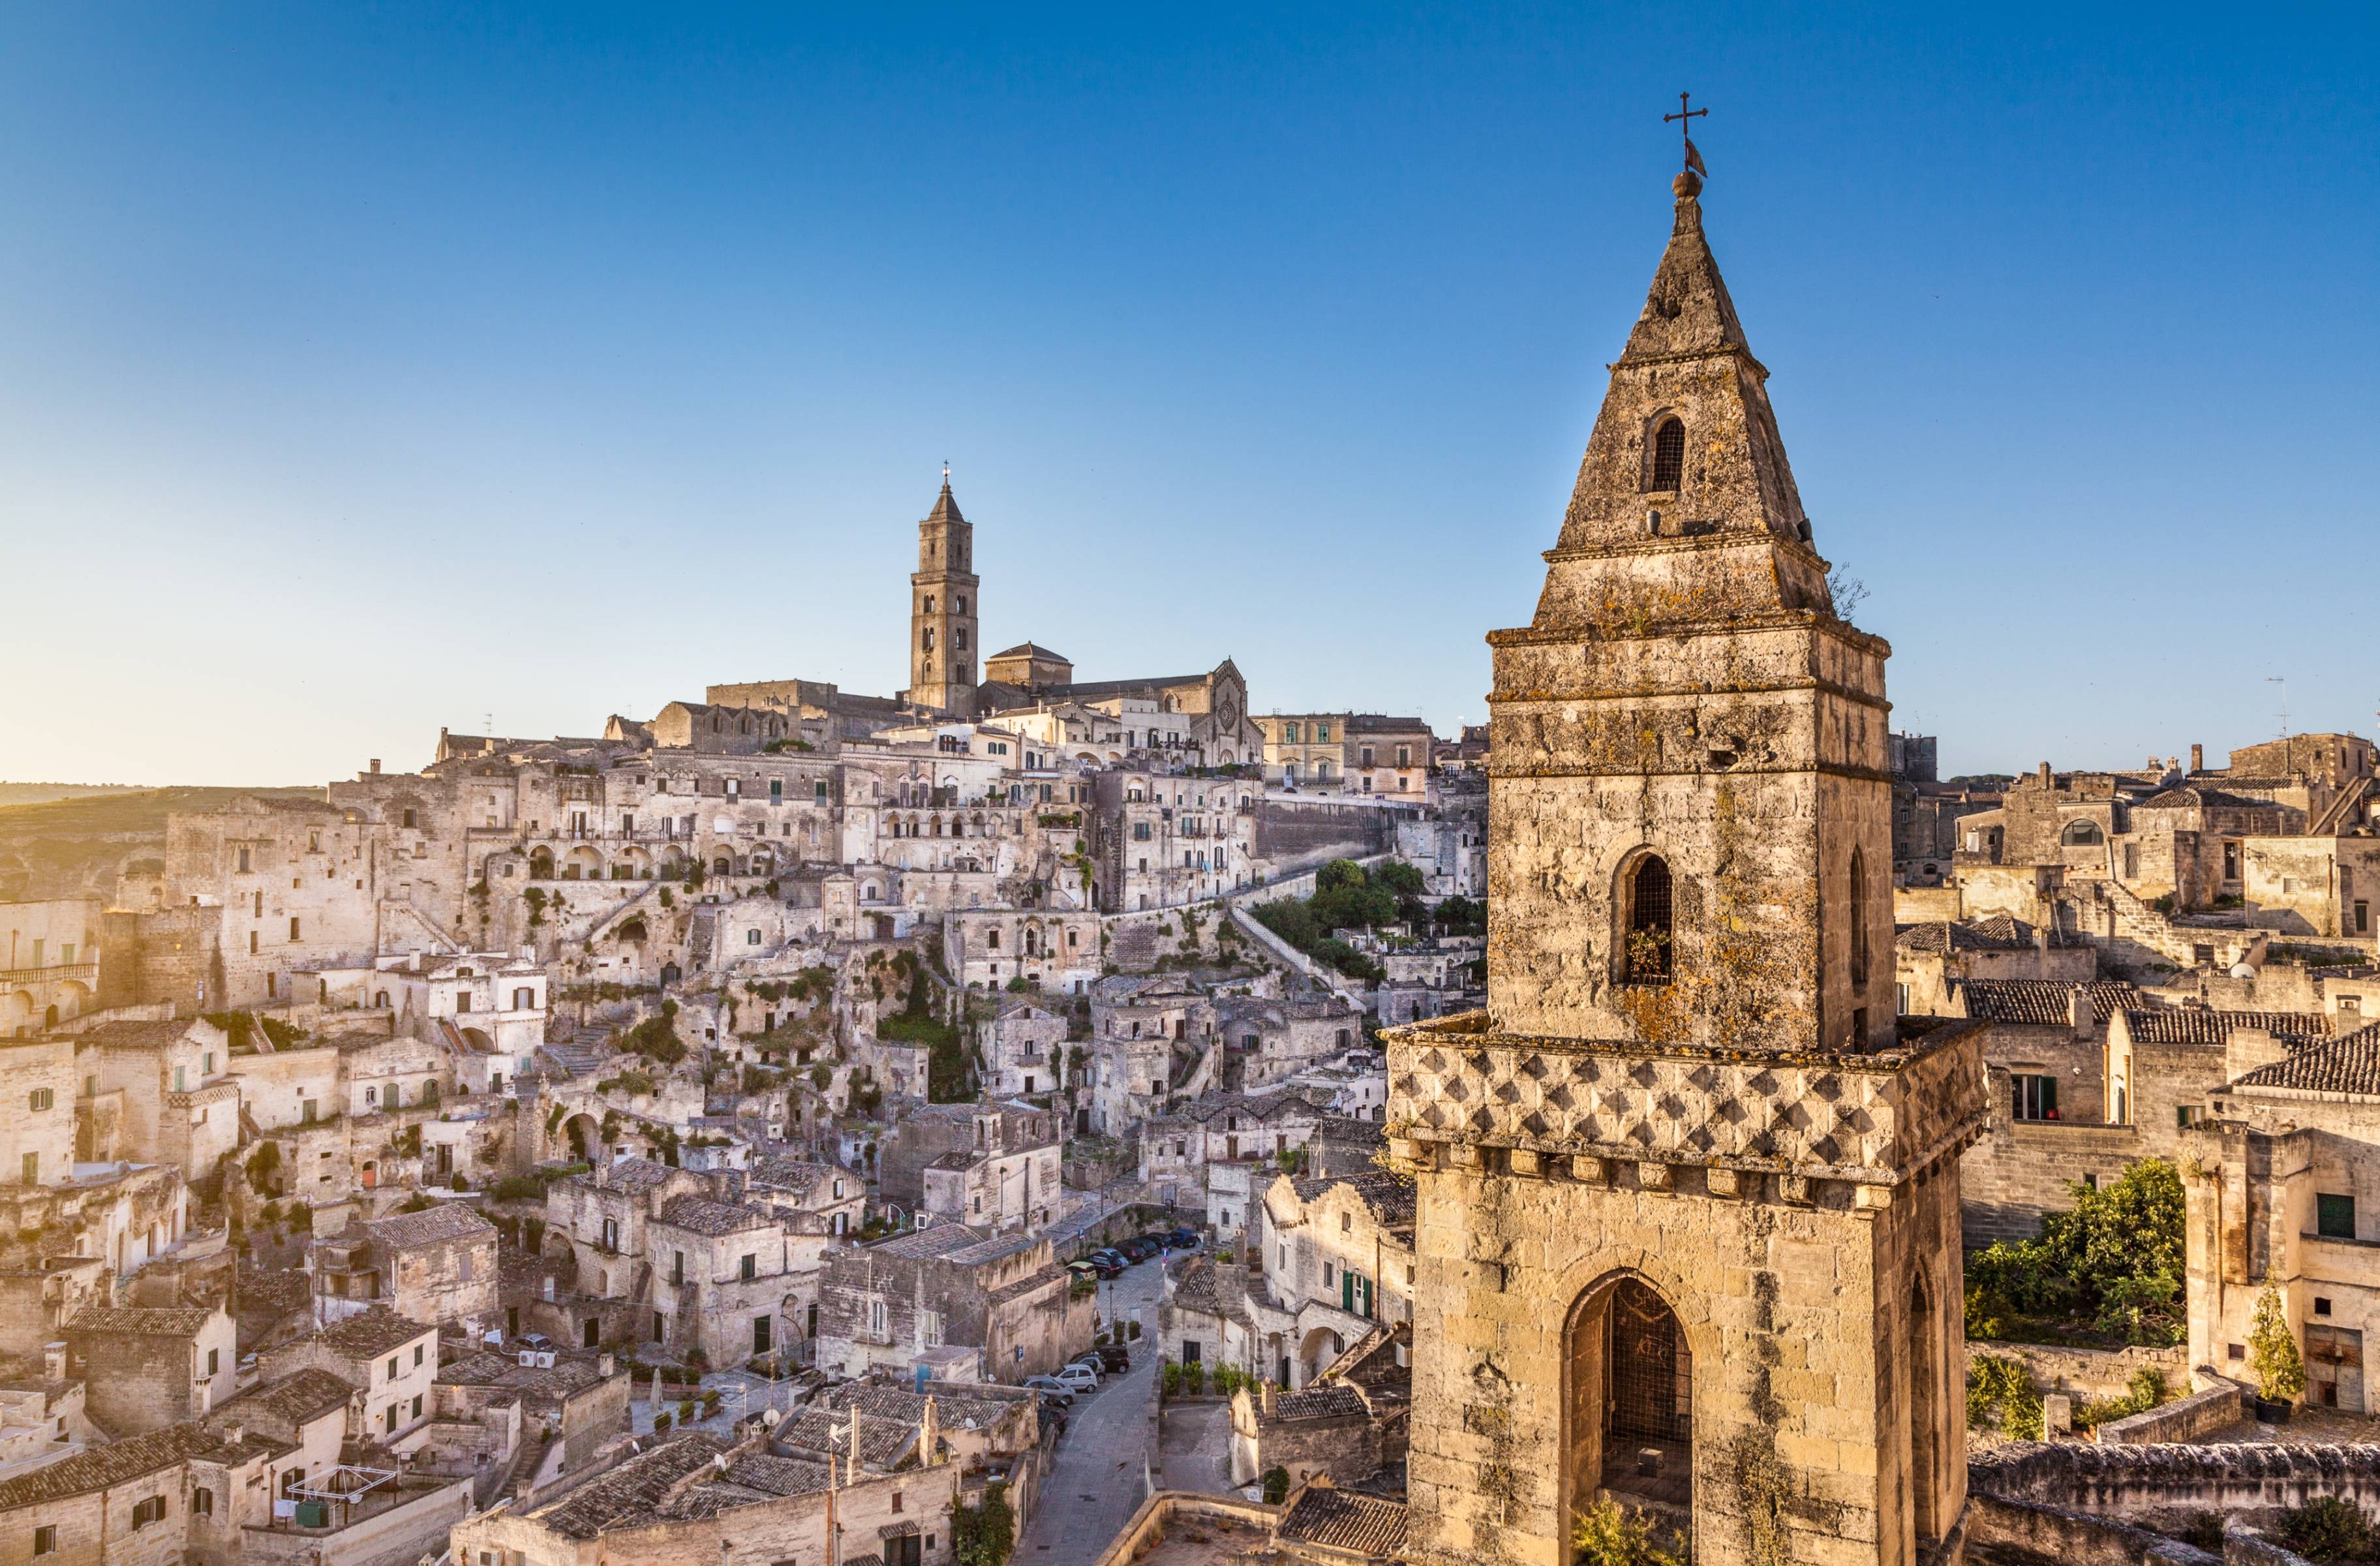 Admirez les beautés de la ville de Matera, excavée dans la roche